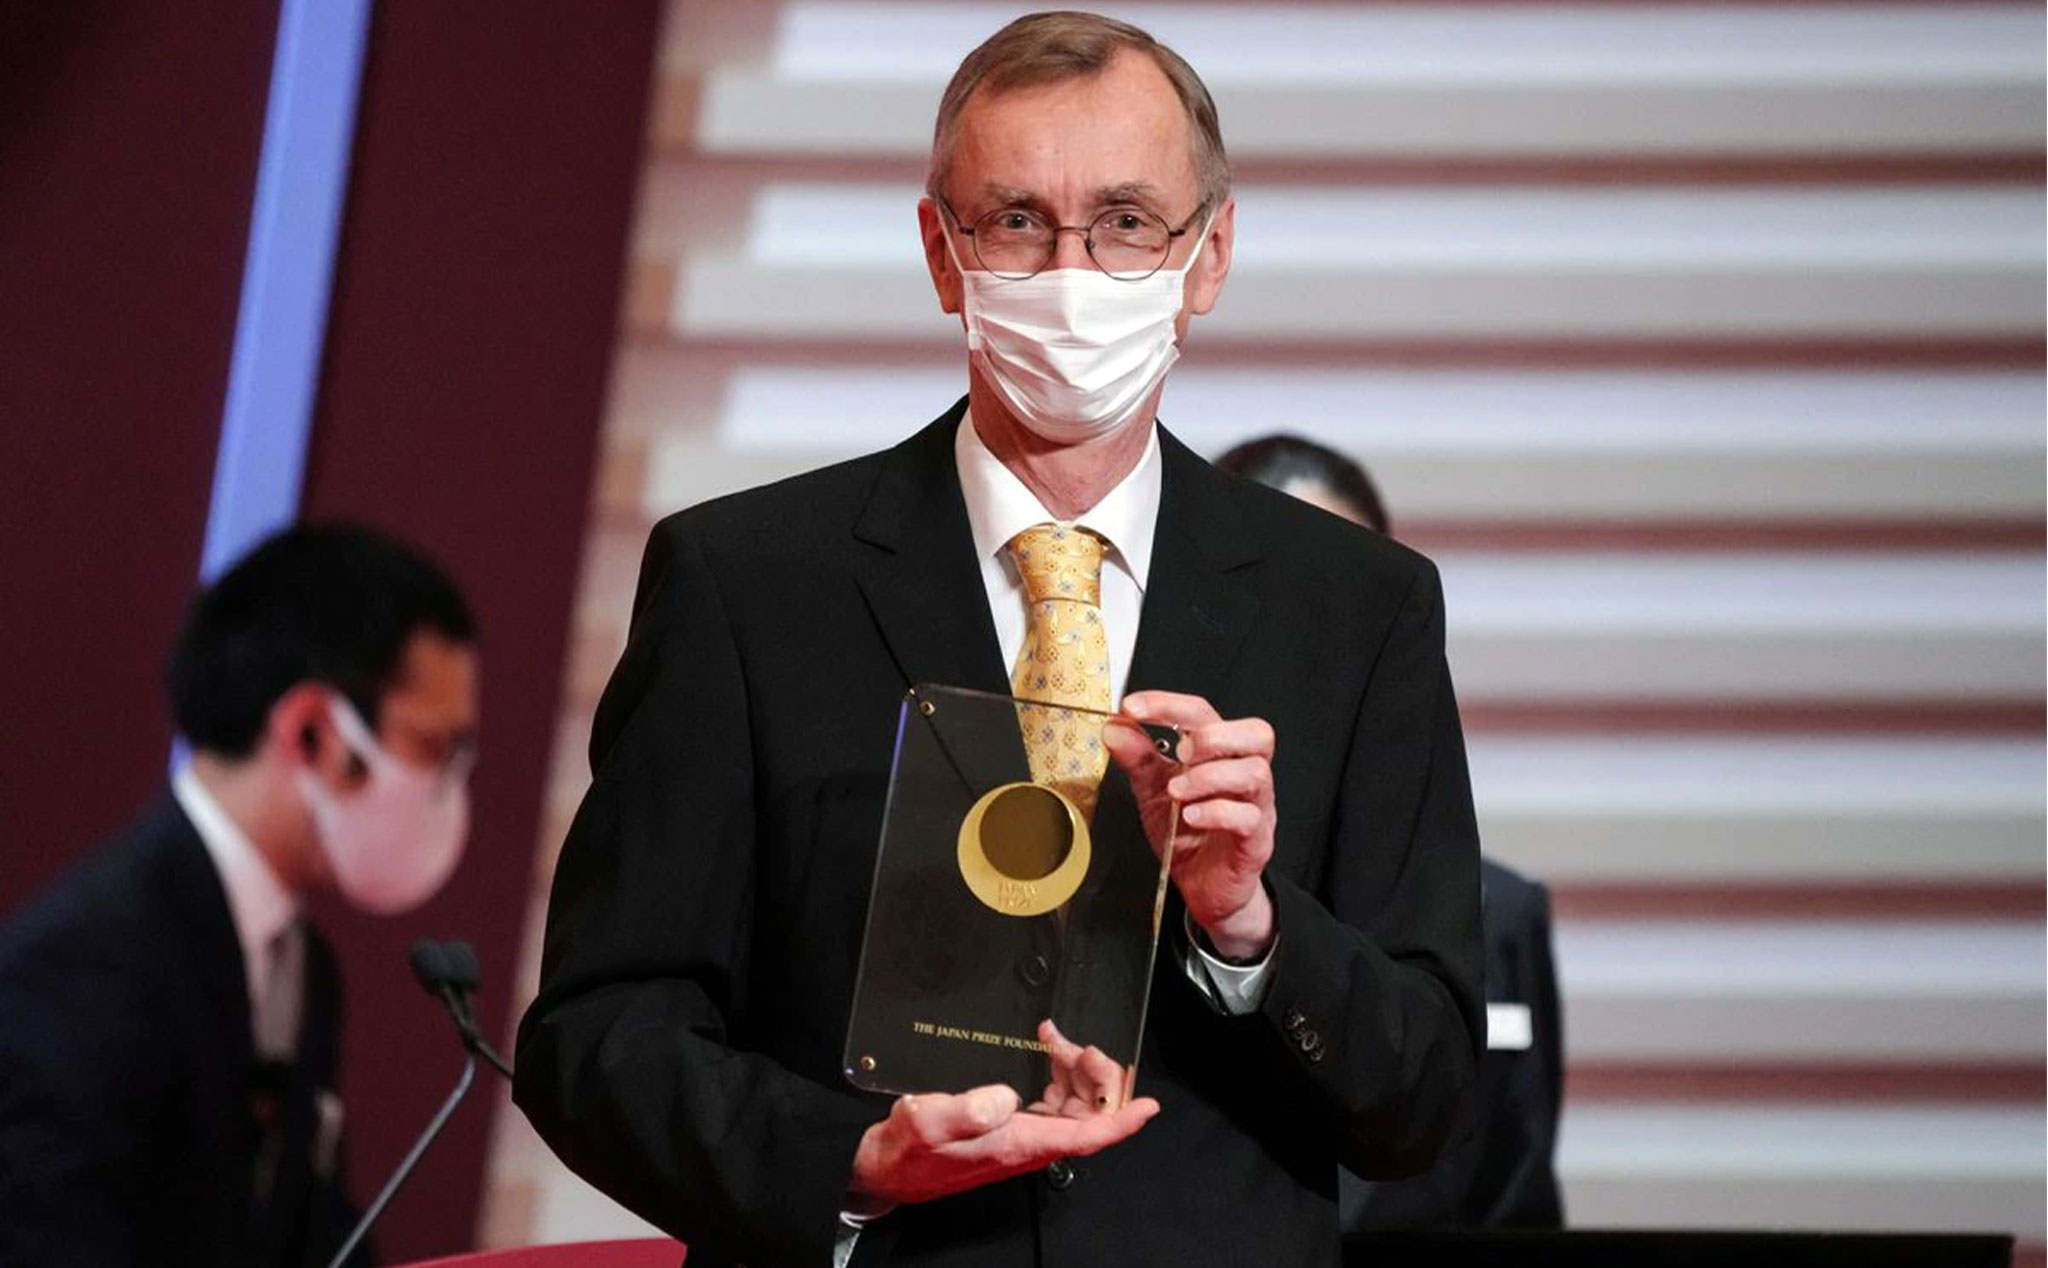 Giáo sư Svante Paabo nhận giải Nobel Y sinh 2022 vì những nghiên cứu về sự tiến hoá của loài người